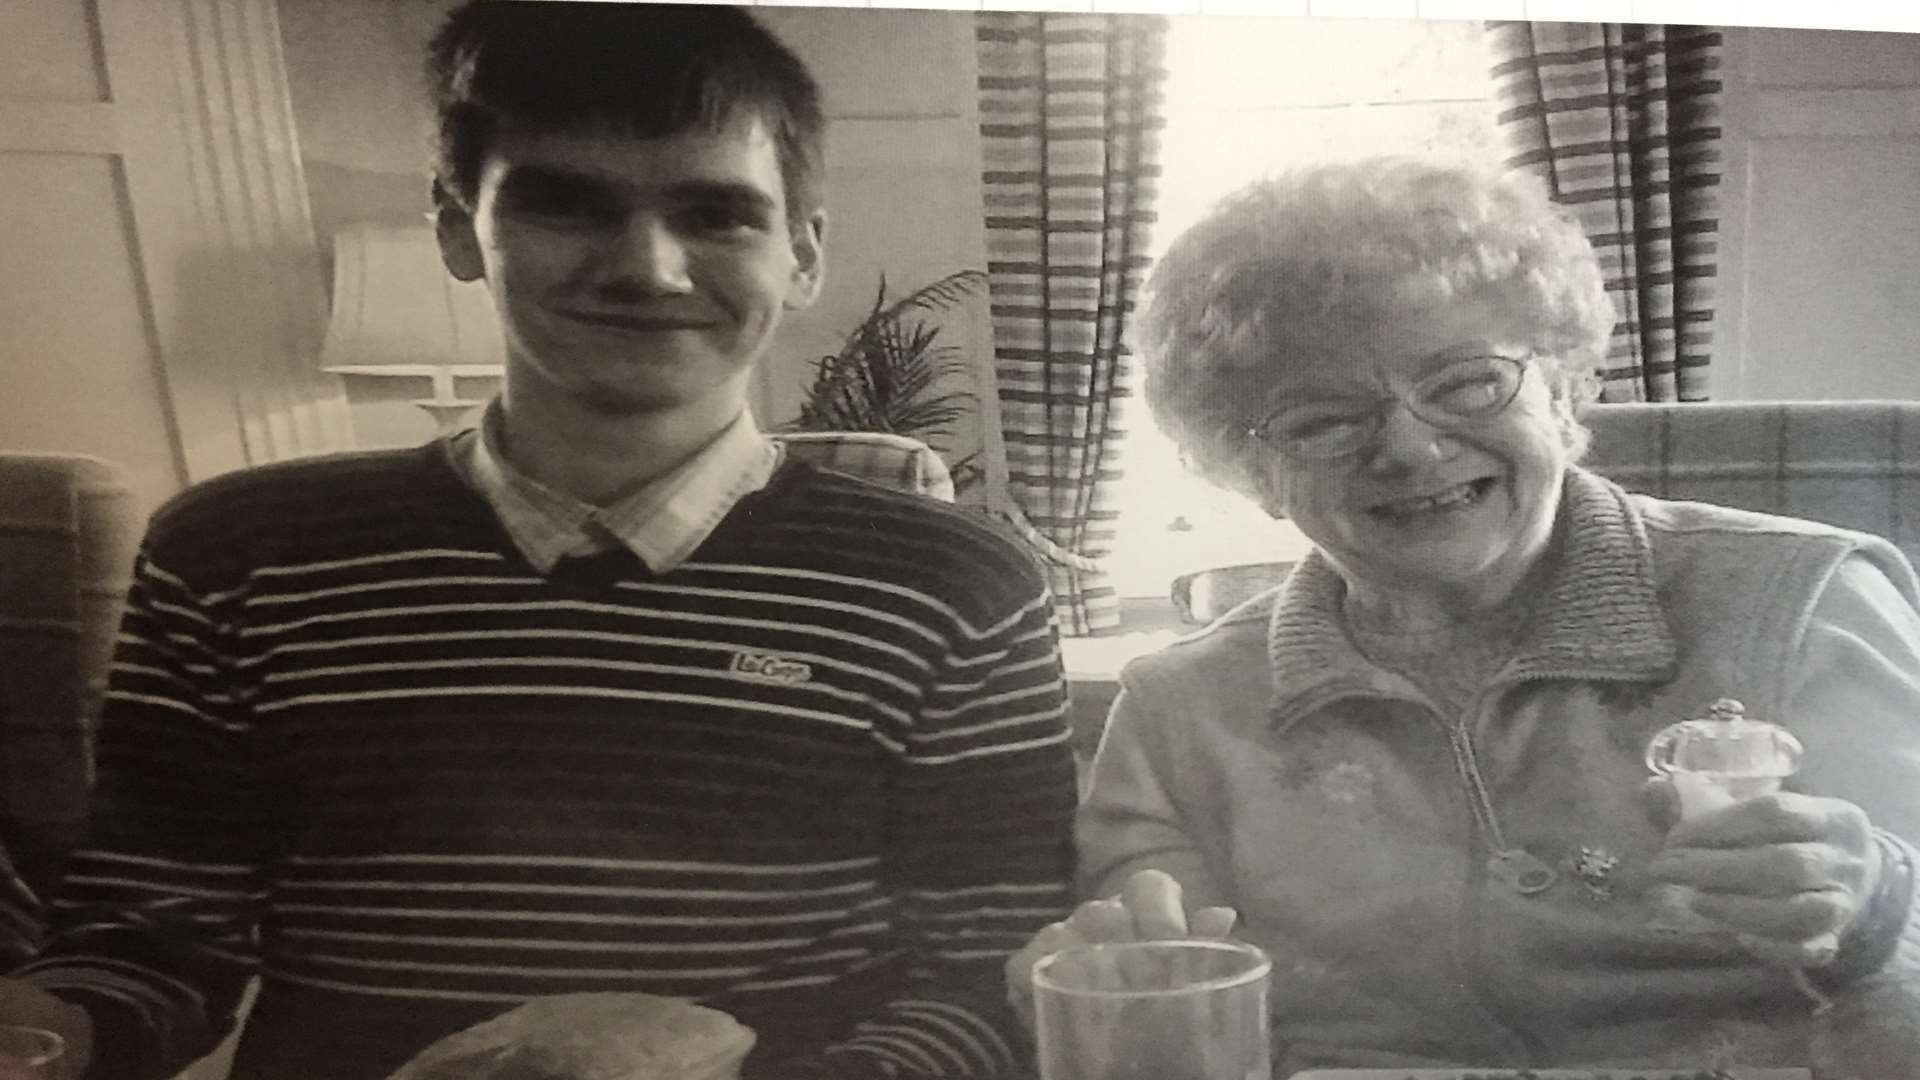 Daniel with his grandma Barbara